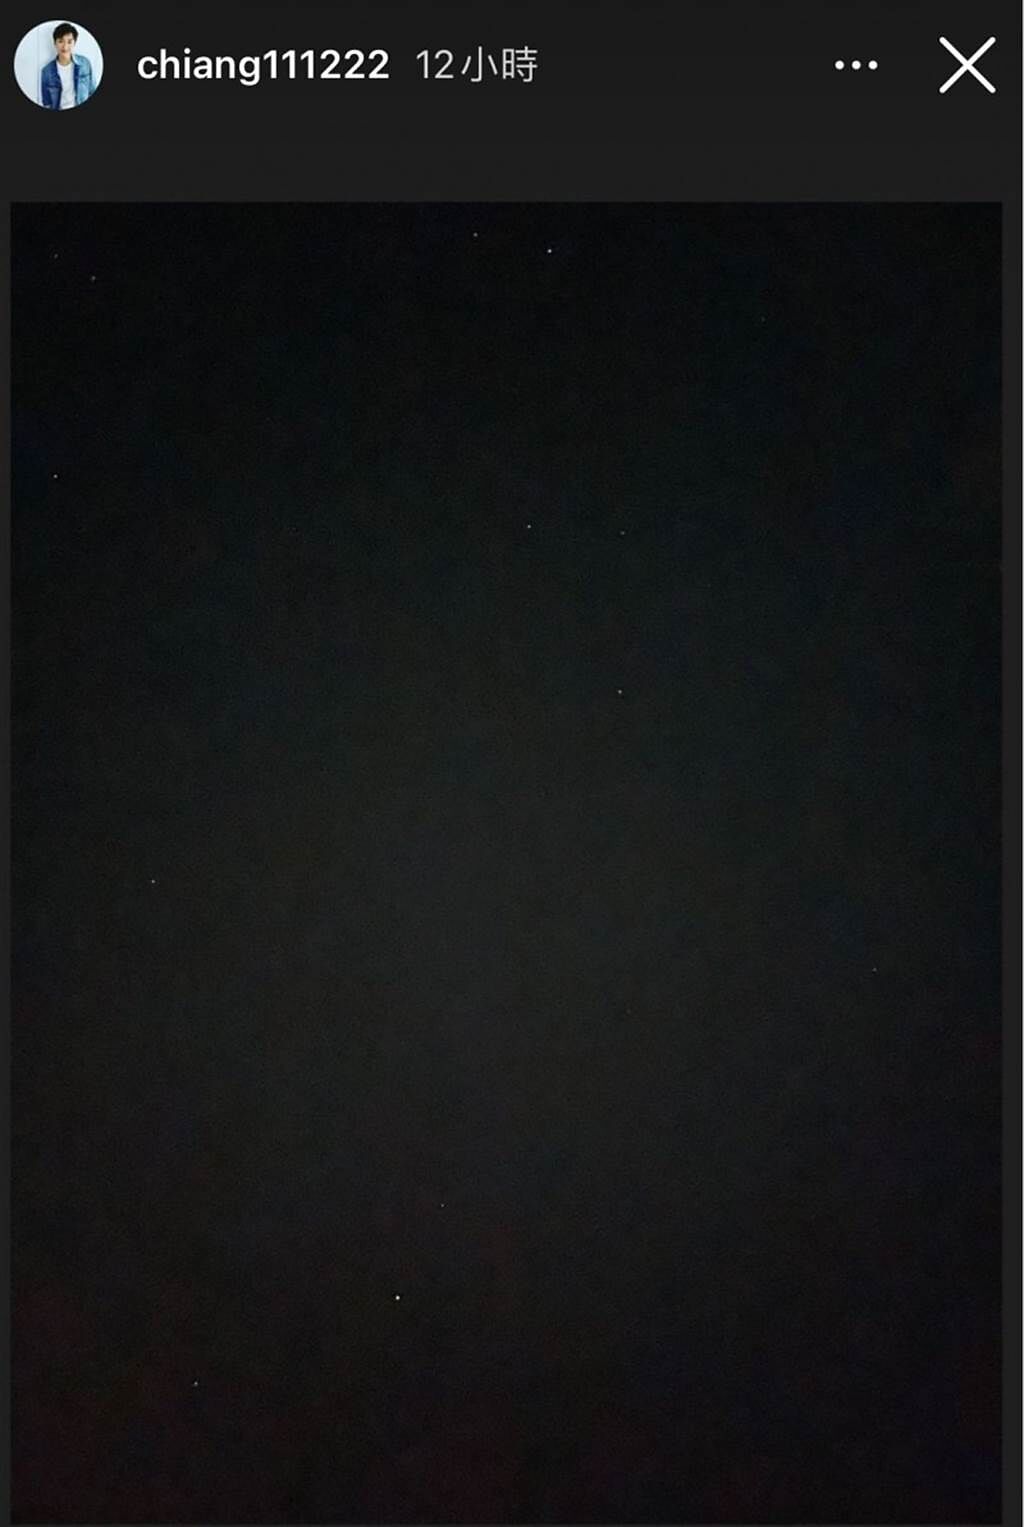 江宏傑拍的其實是星空。(圖/翻攝自江宏傑IG)